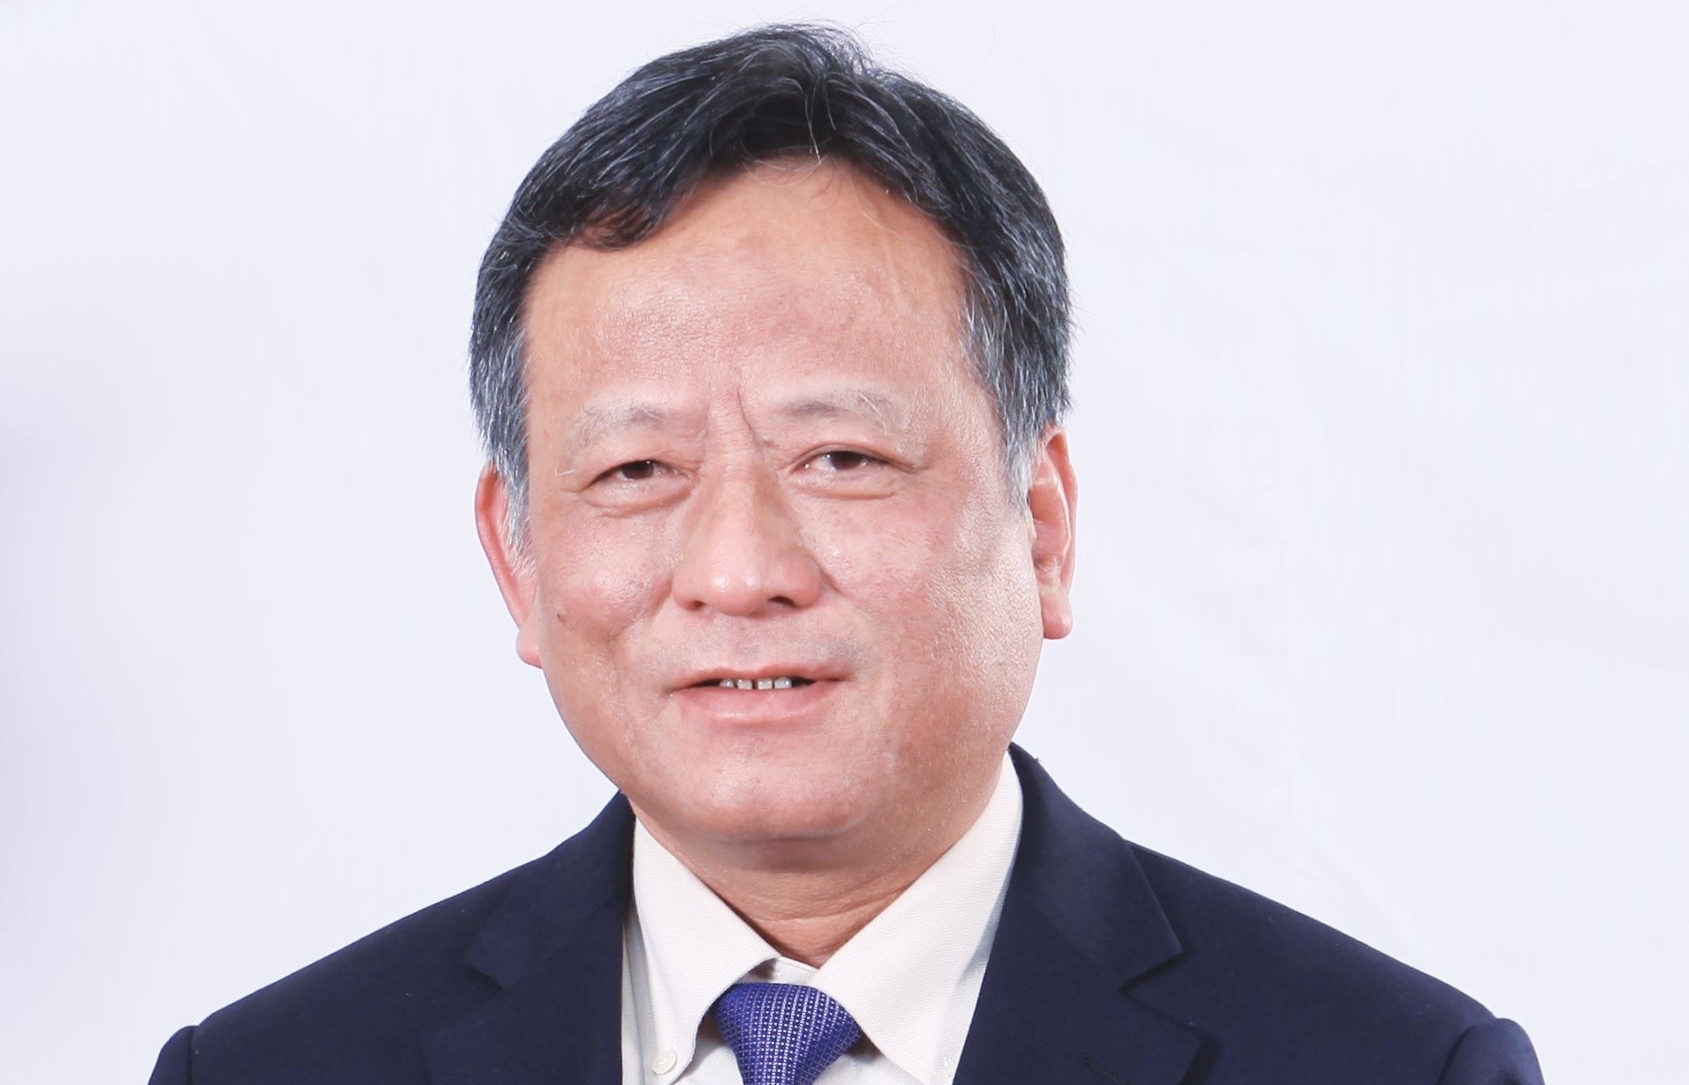 Nguyên Phó Tổng giám đốc EVN Nguyễn Tấn Lộc: "Hãy tận tâm phục vụ, khách hàng sẽ ghi nhận"